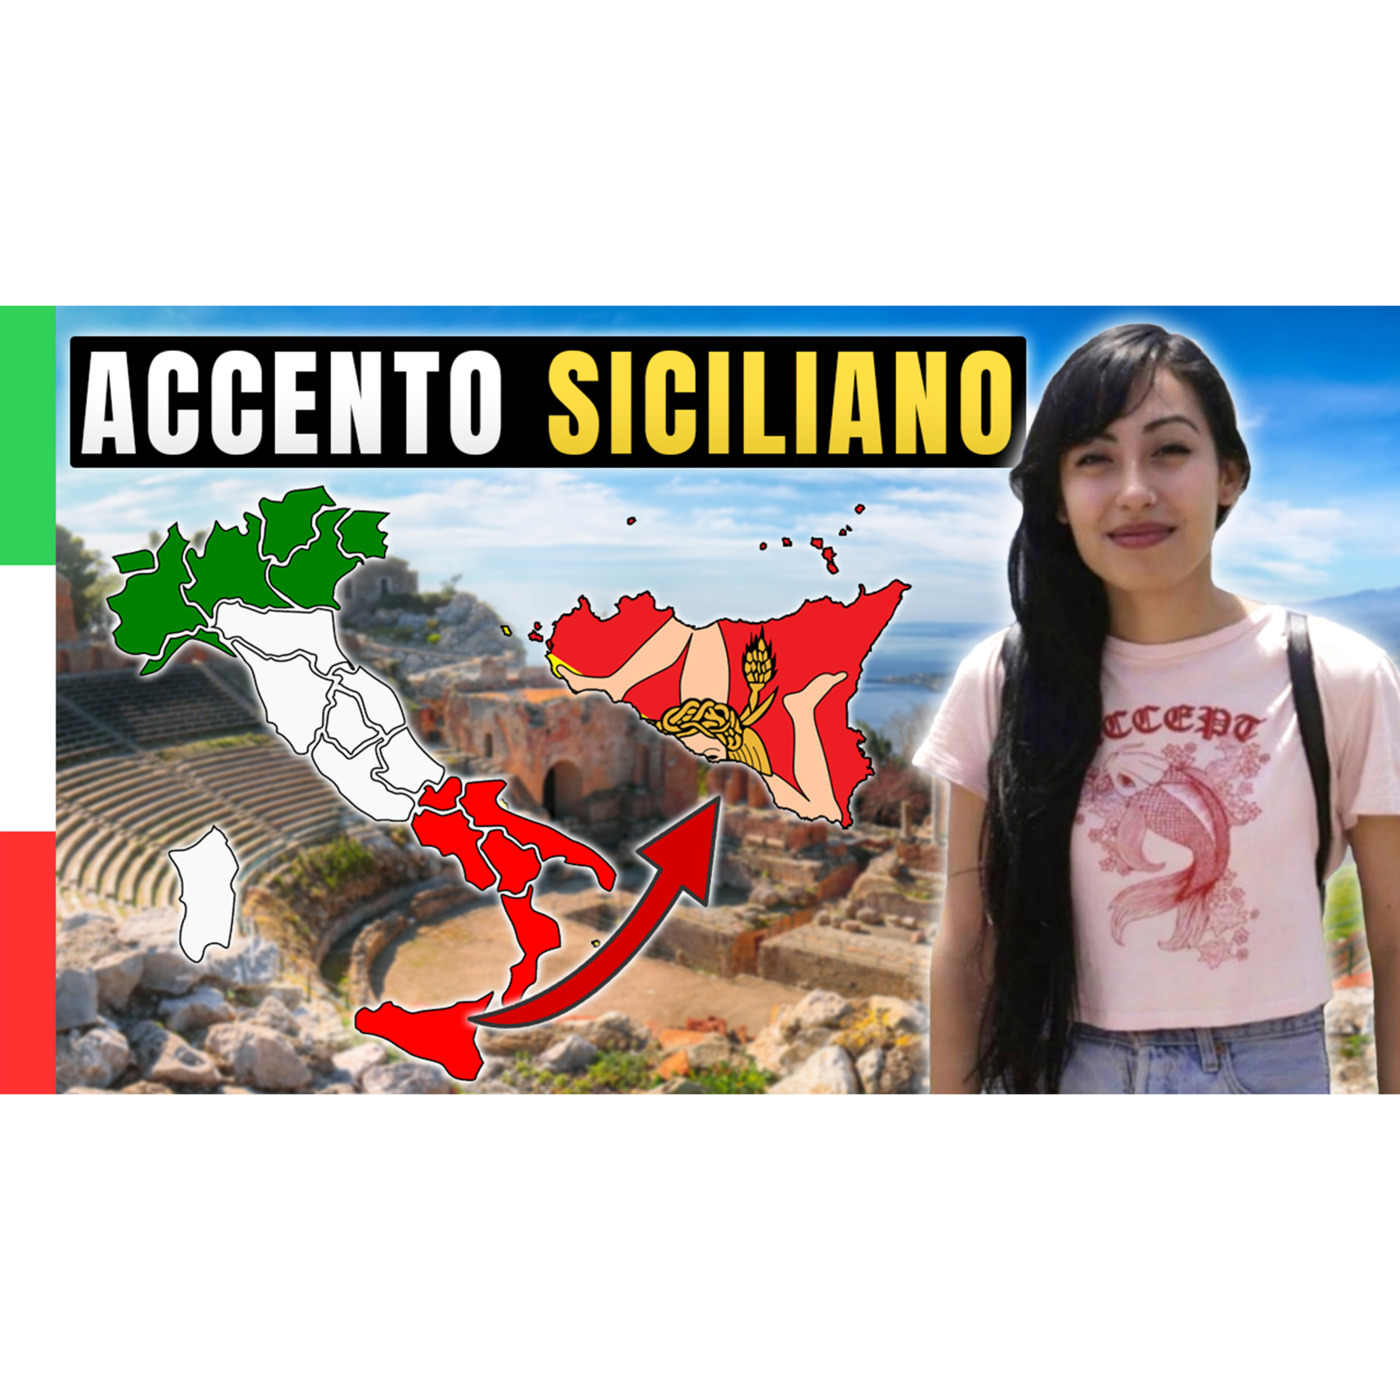 Episode 528: Vi Presento Miranda e l'accento Siciliano | Imparare l’Italiano